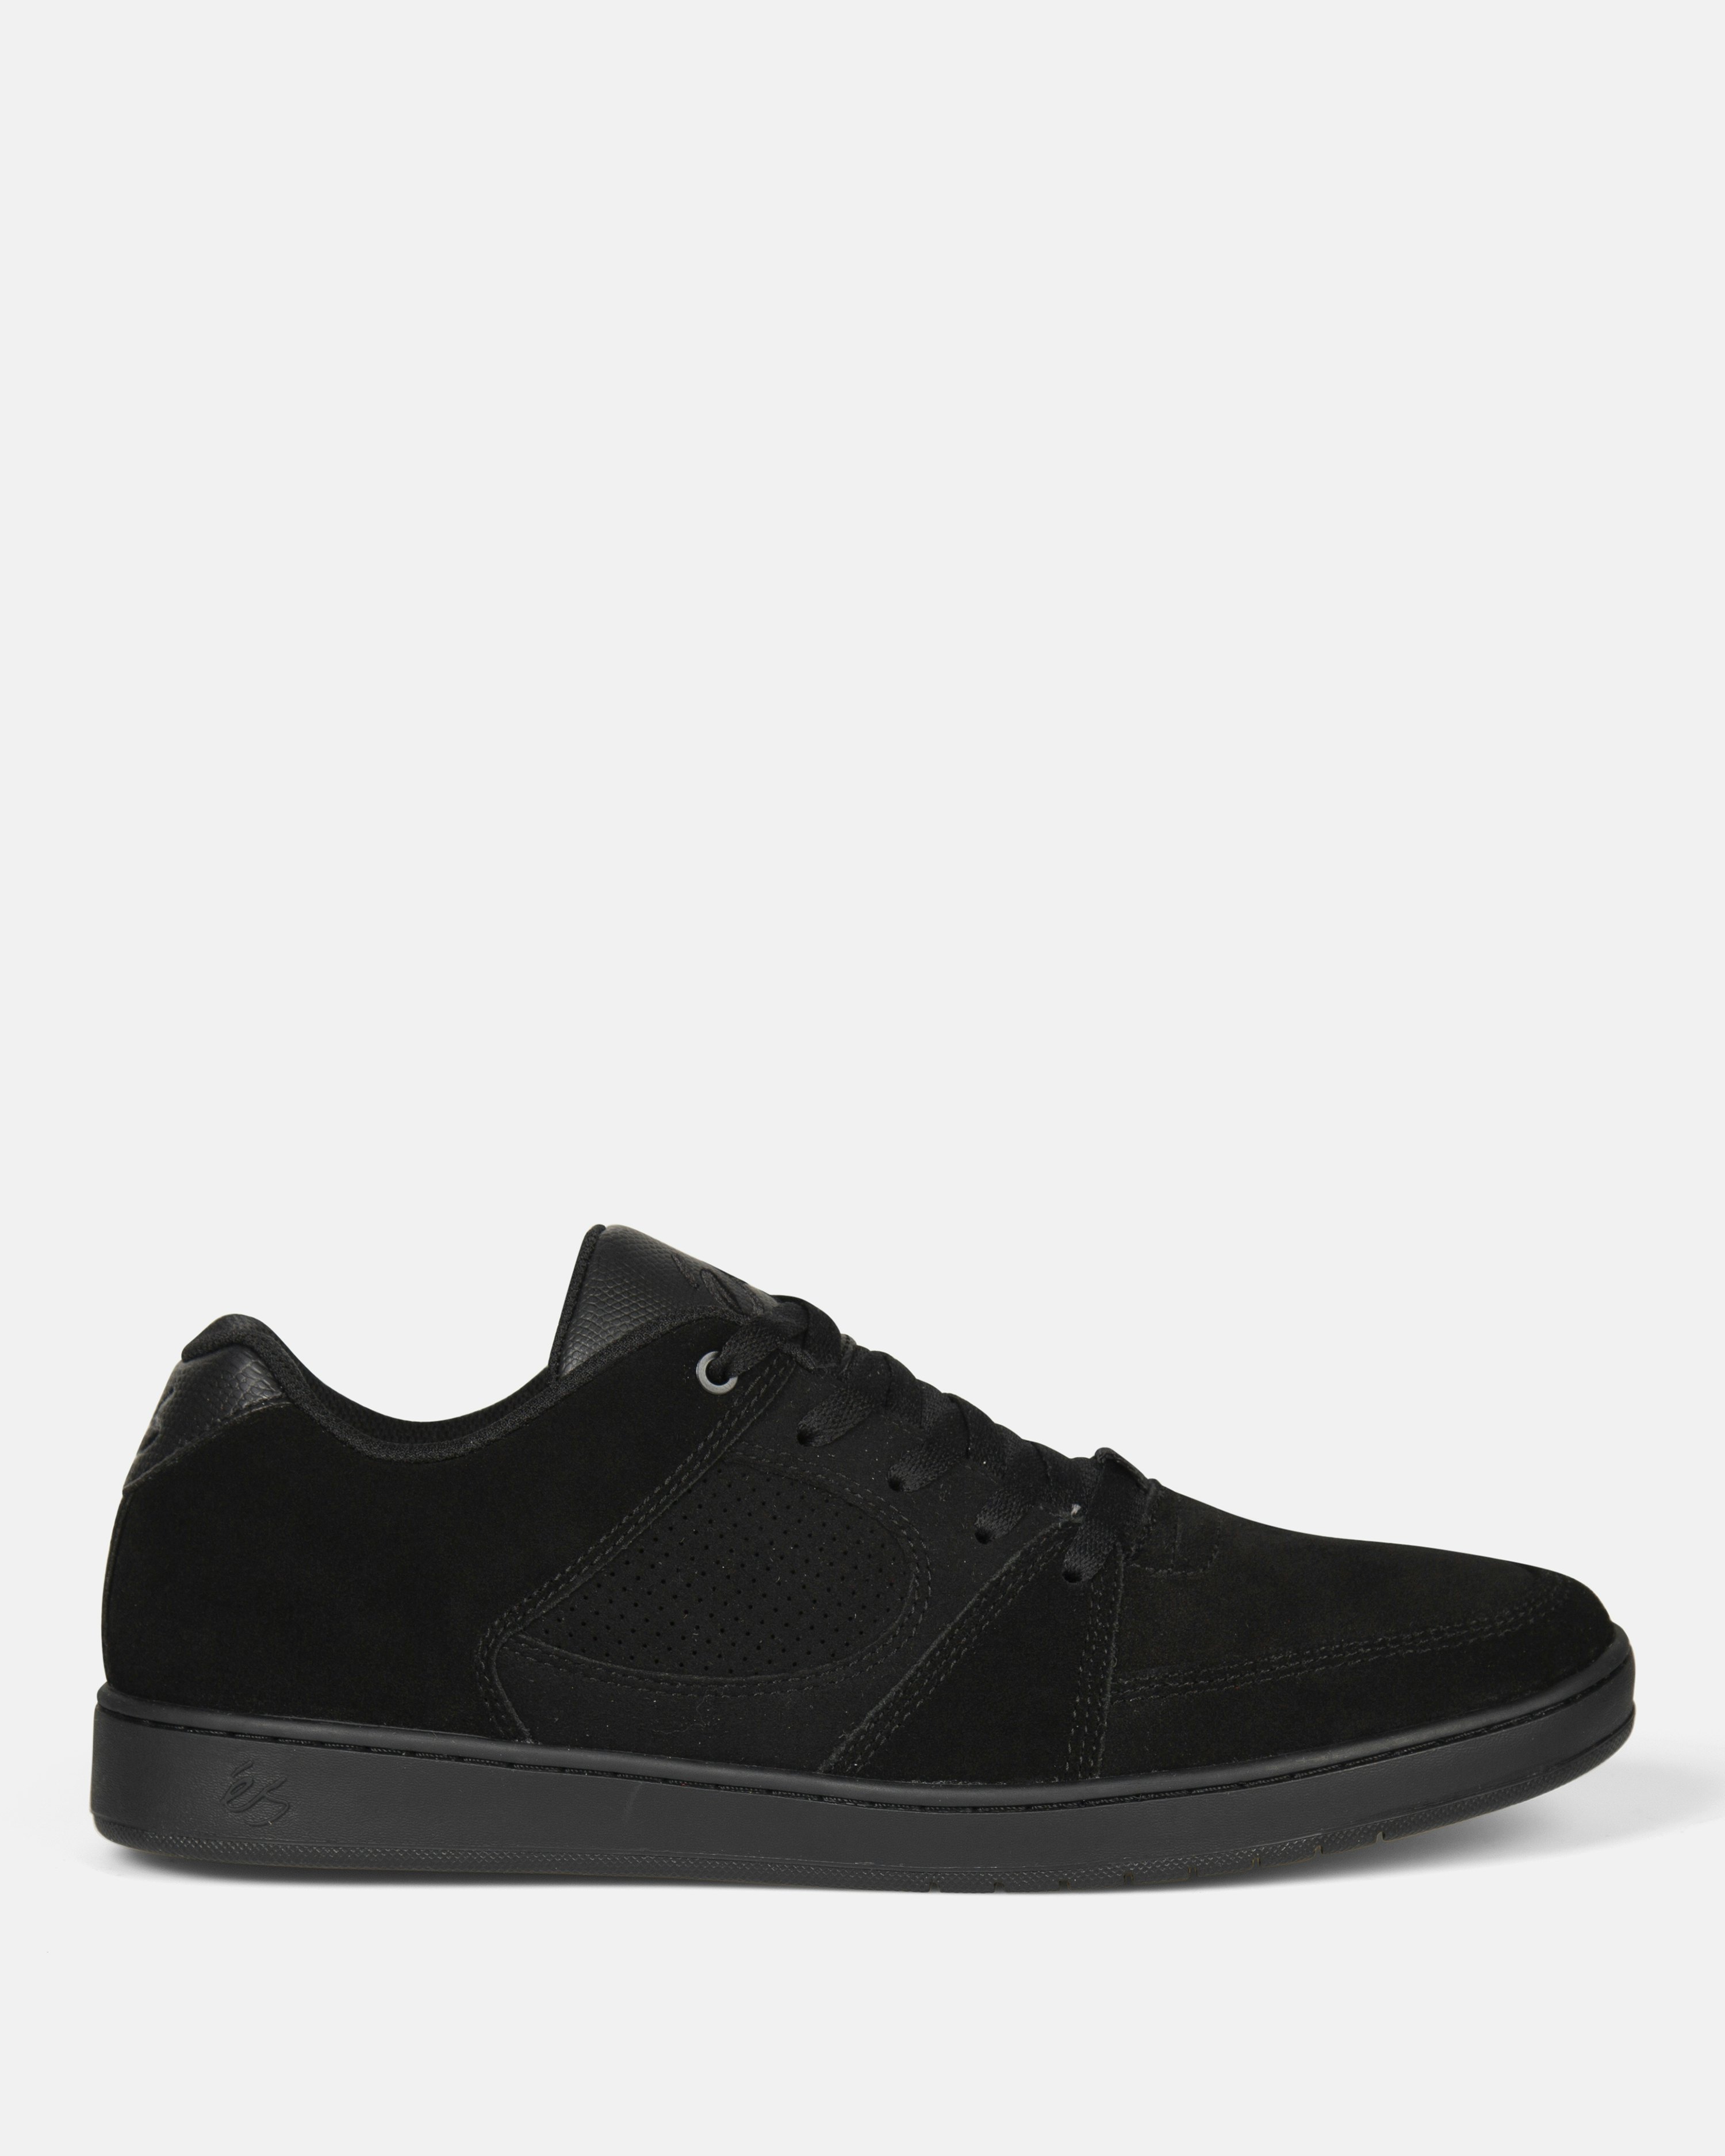 eS Accel Slim black white Sneaker Schuhe schwarz 